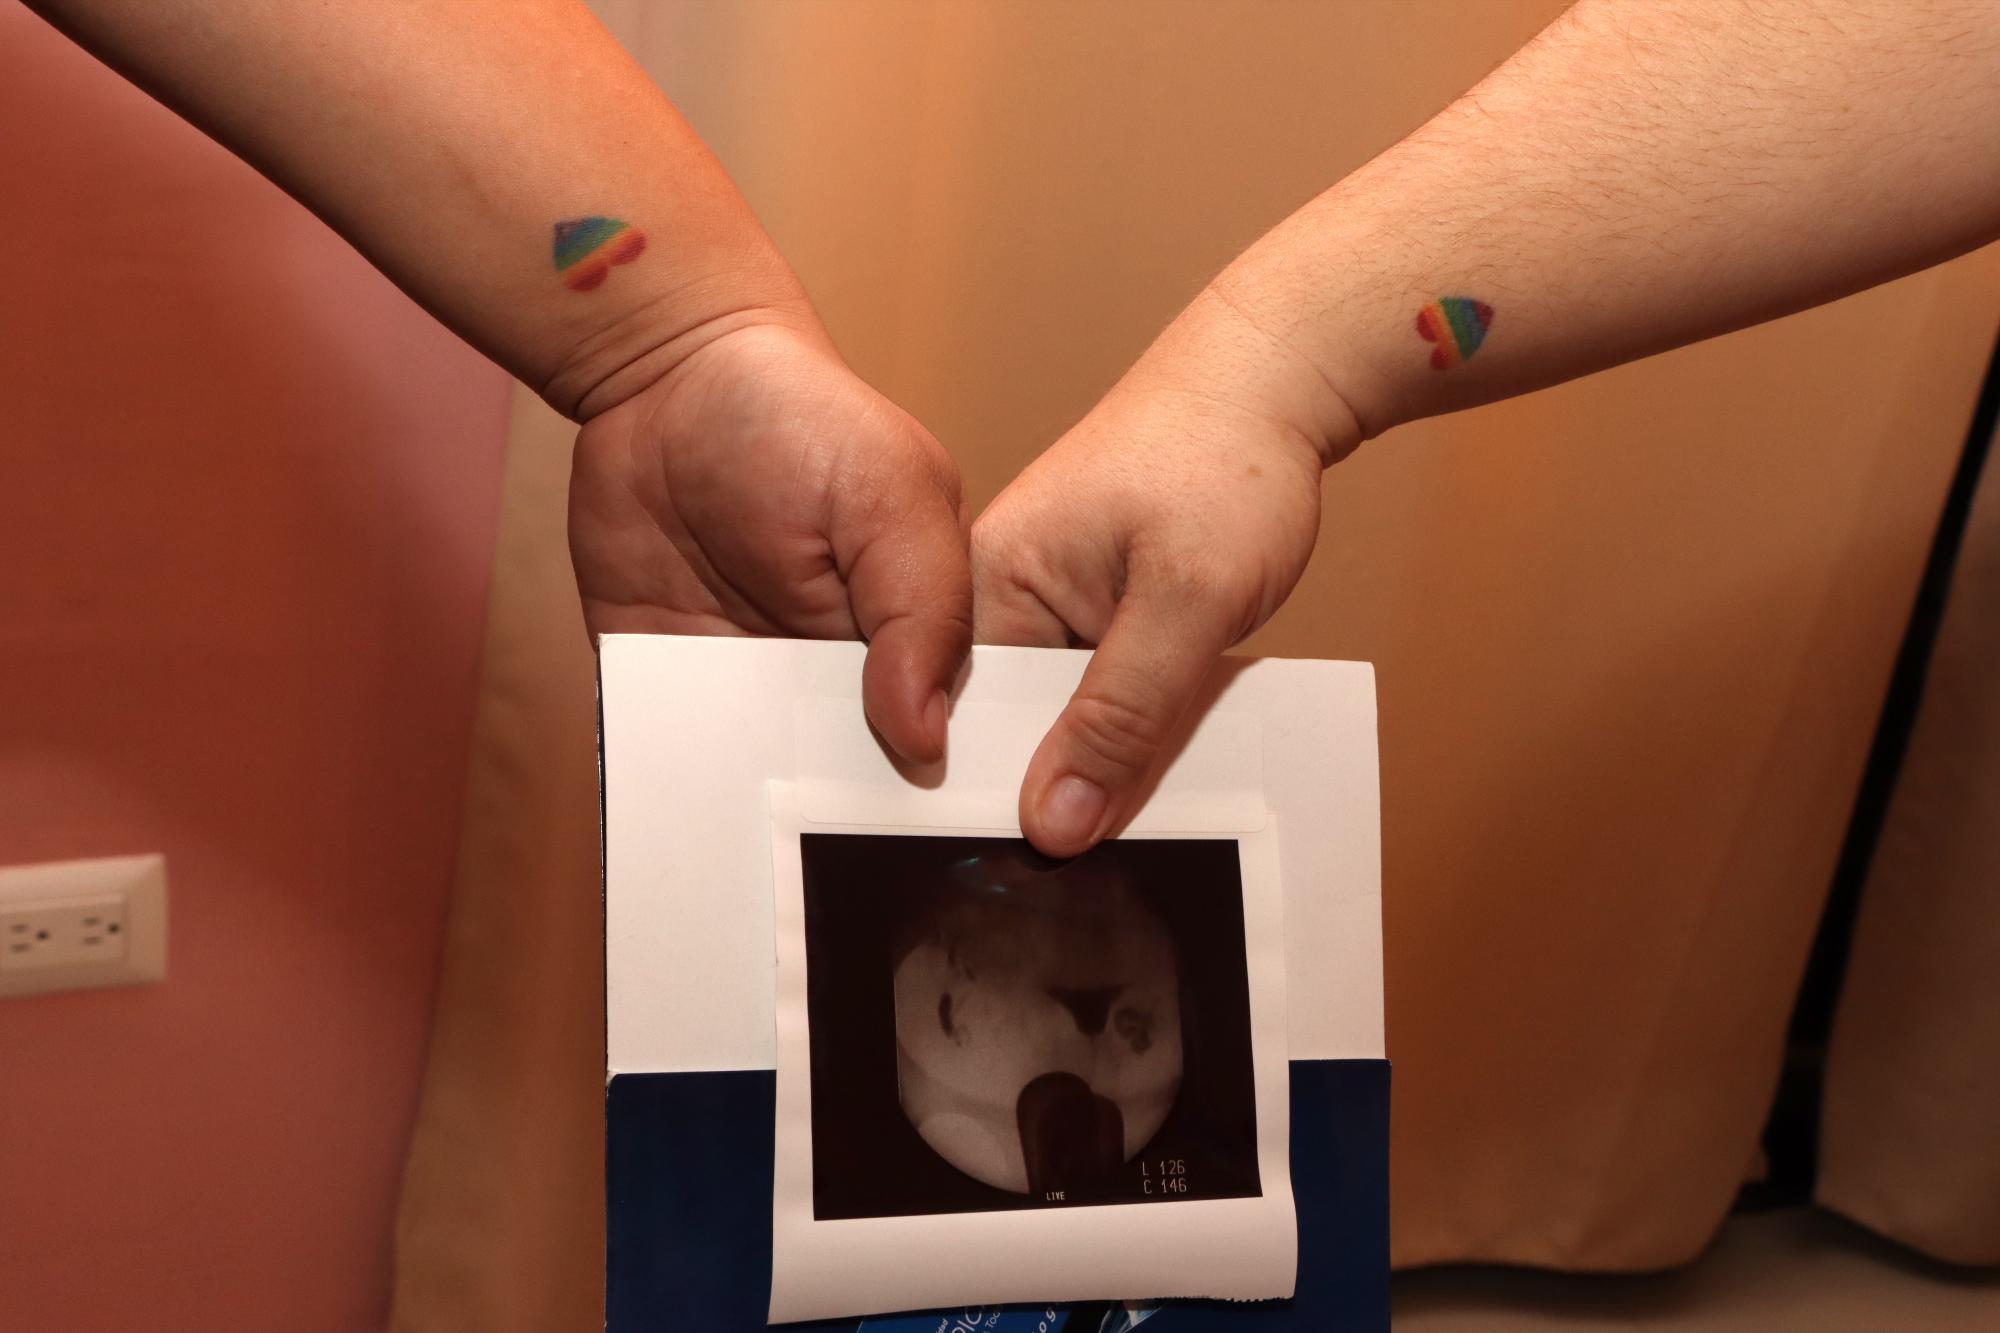 $!La muestra para iniciar con el procedimiento de inseminación ya fue colocada en el útero de Naty y ahora la pareja permanecerá en espera de resultados positivos para dentro de 15 días.